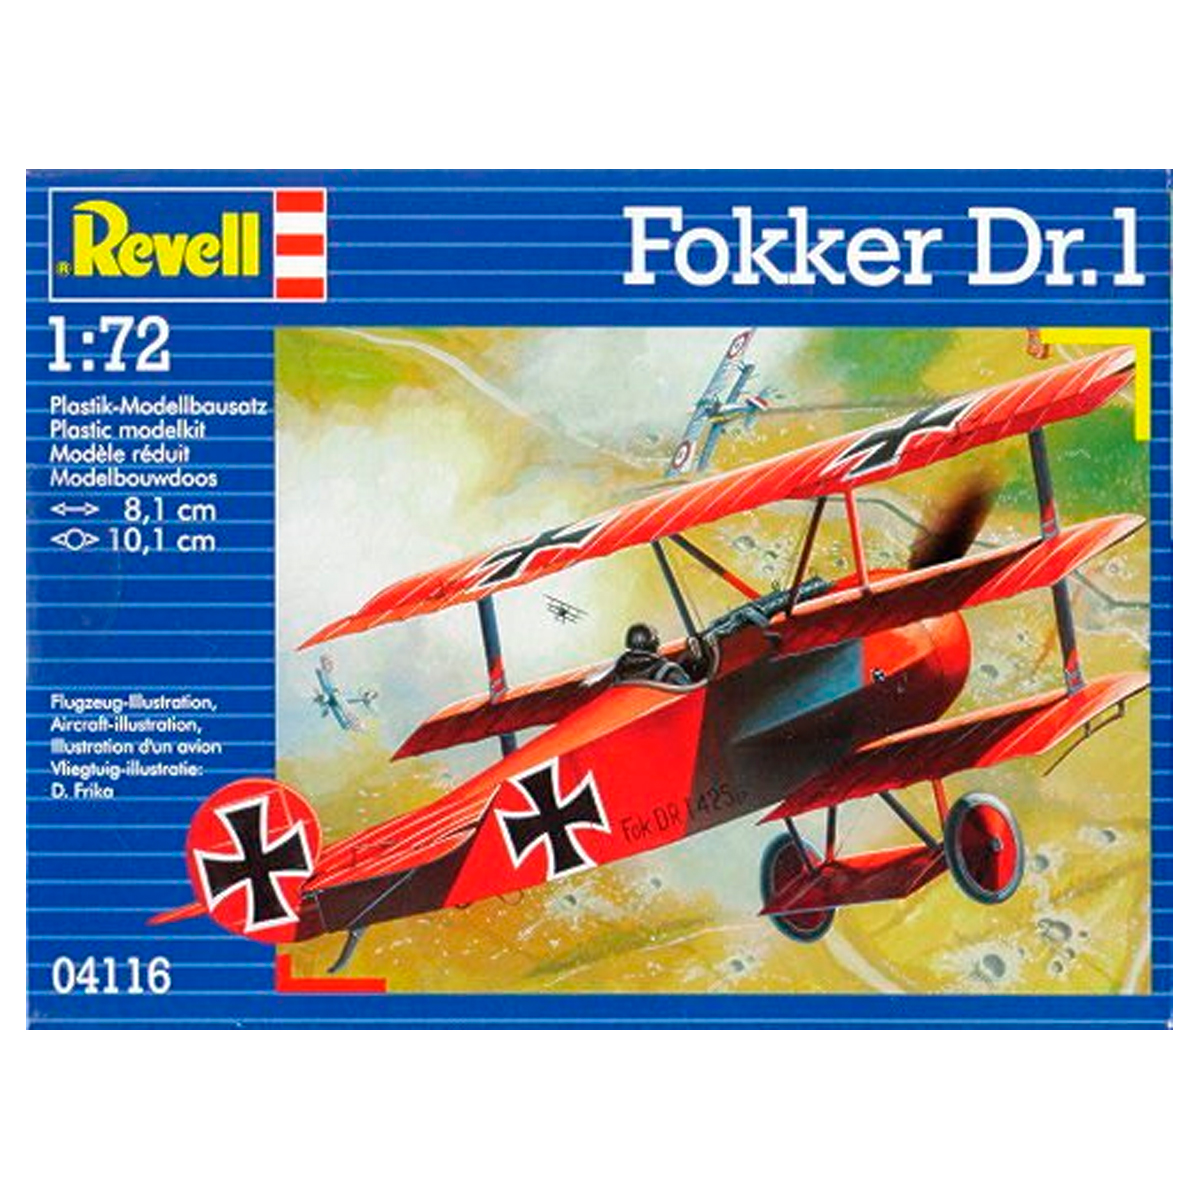 REVELL 1/72 Fokker Dr.1